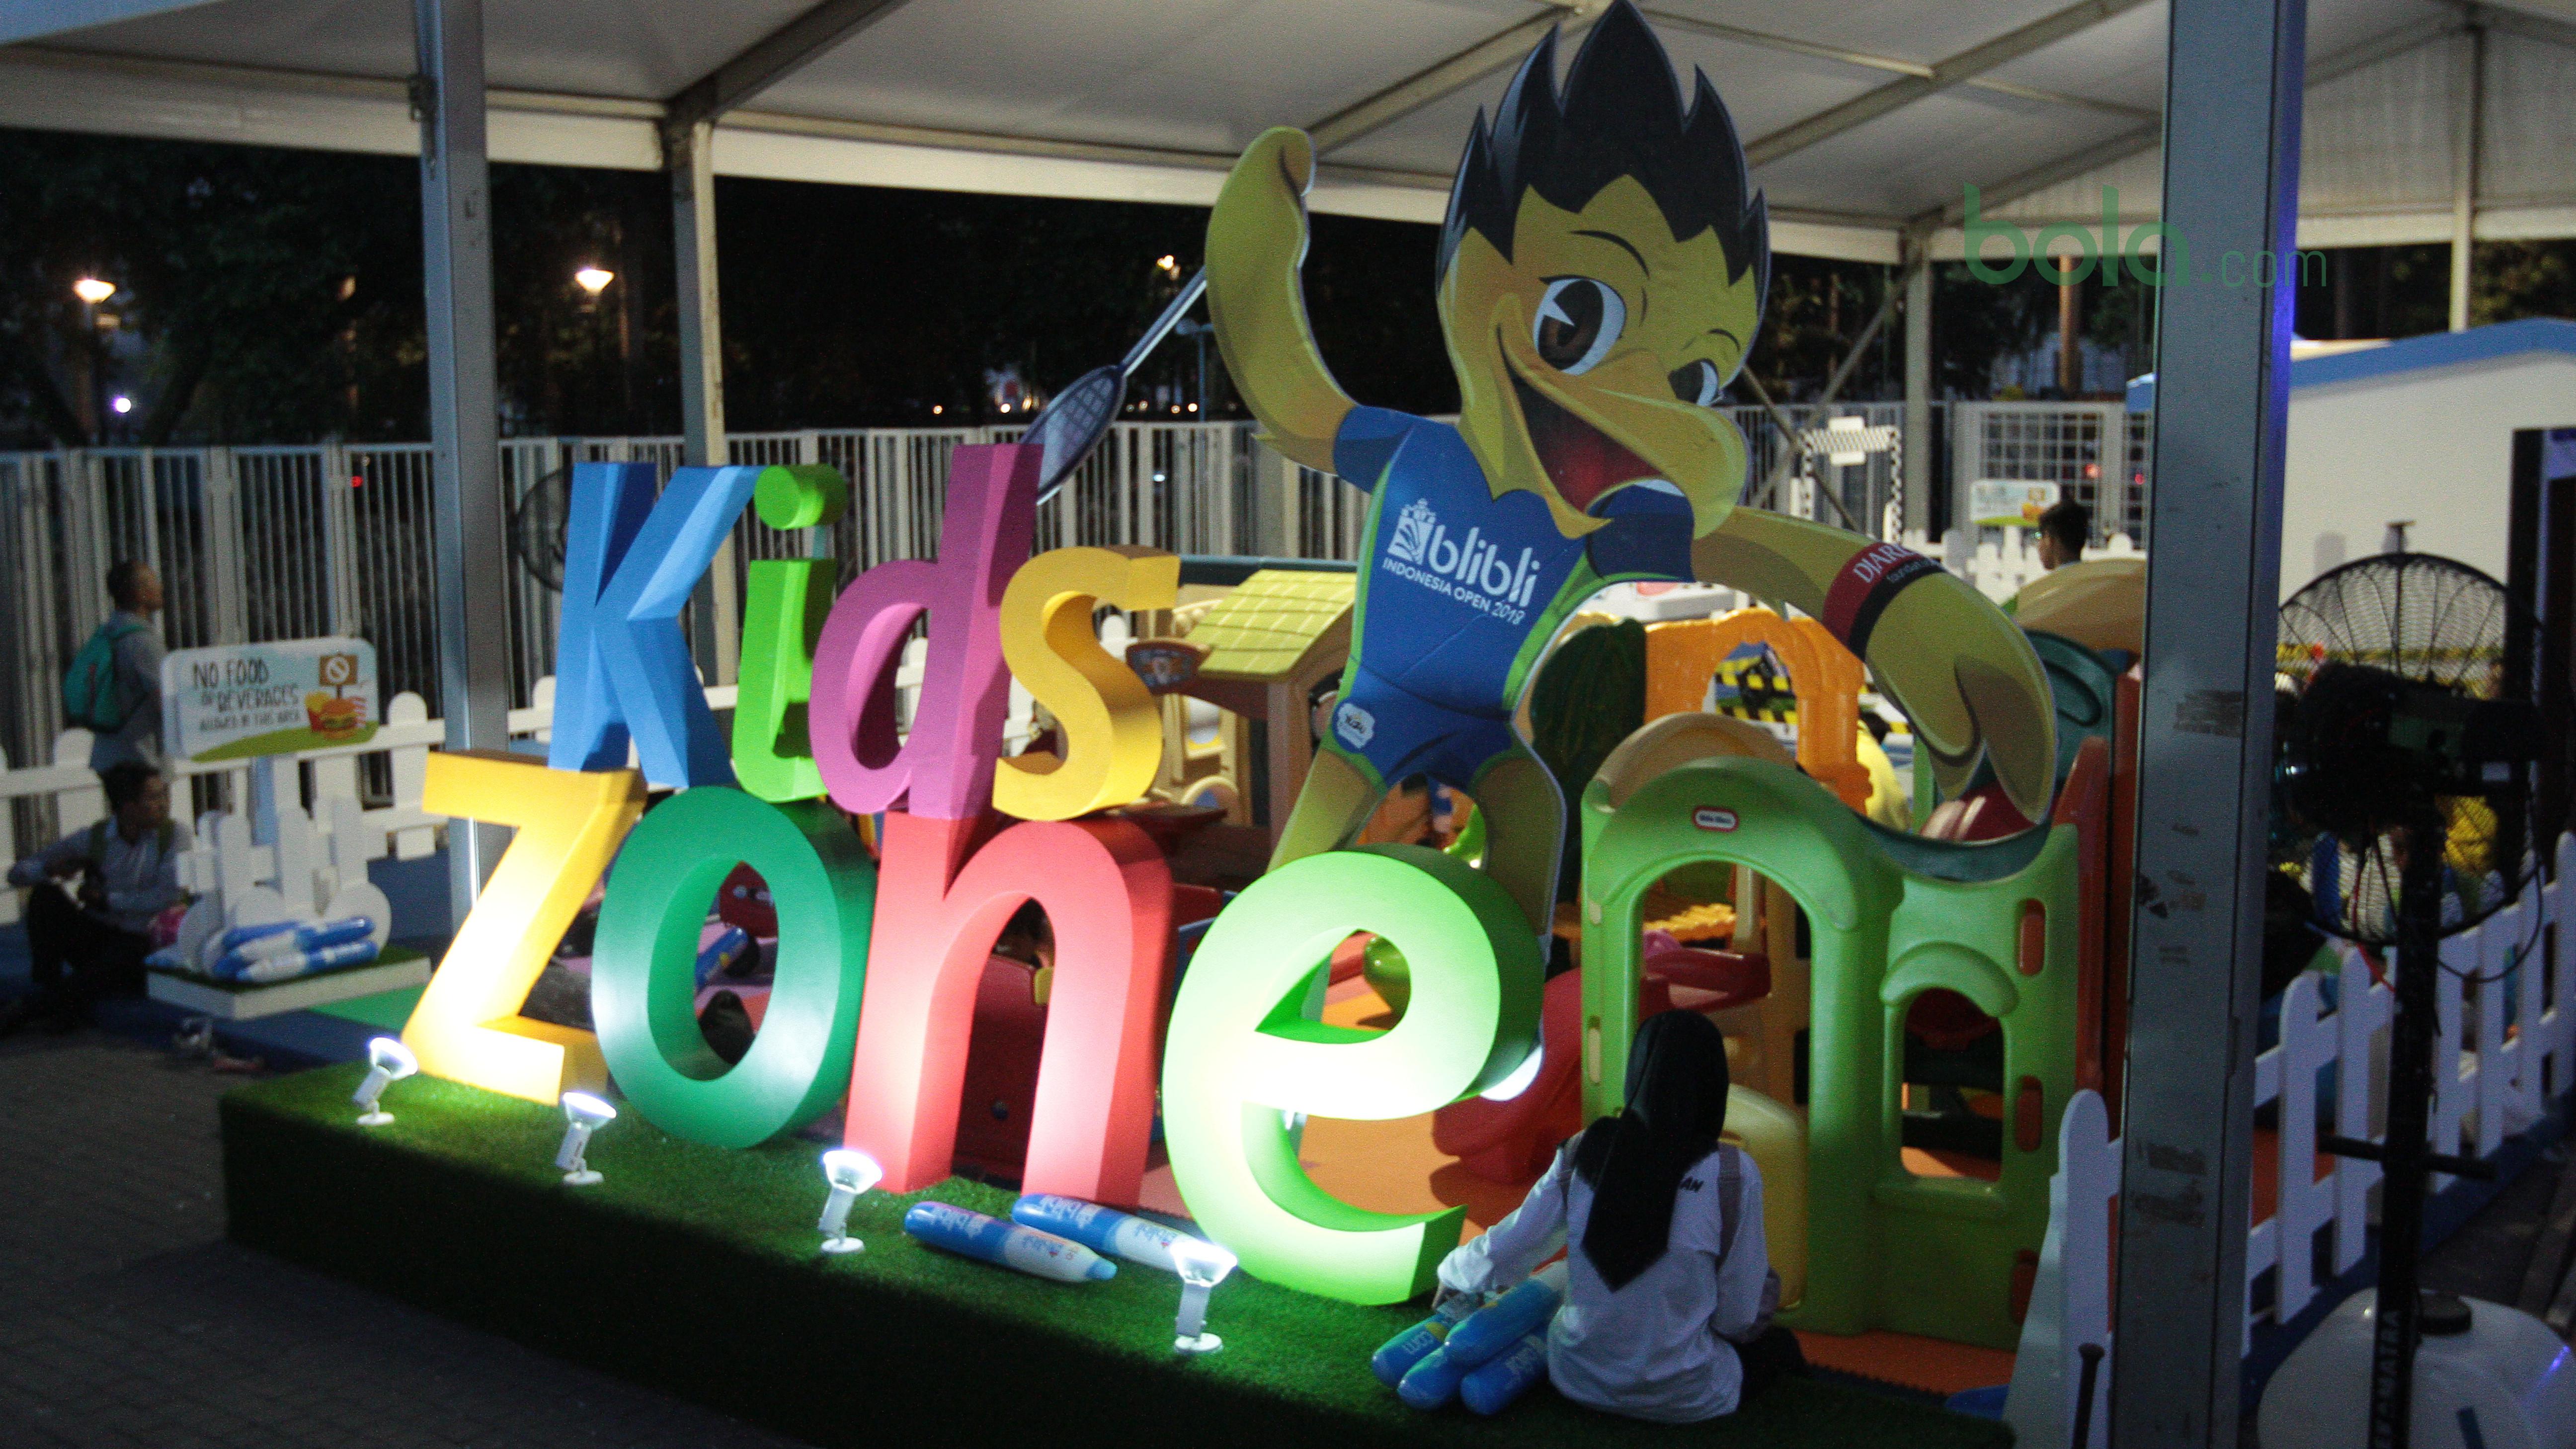 Kids Zone menjadi salah satu hiburan pada area Indonesia Open 2018 di Istora Senayan, Jakarta, (4/6/2018). Fasitilats tersebut untuk memberikan hiburan untuk keluarga. (Bola.com/Benediktus Gerendo Pradigdo)